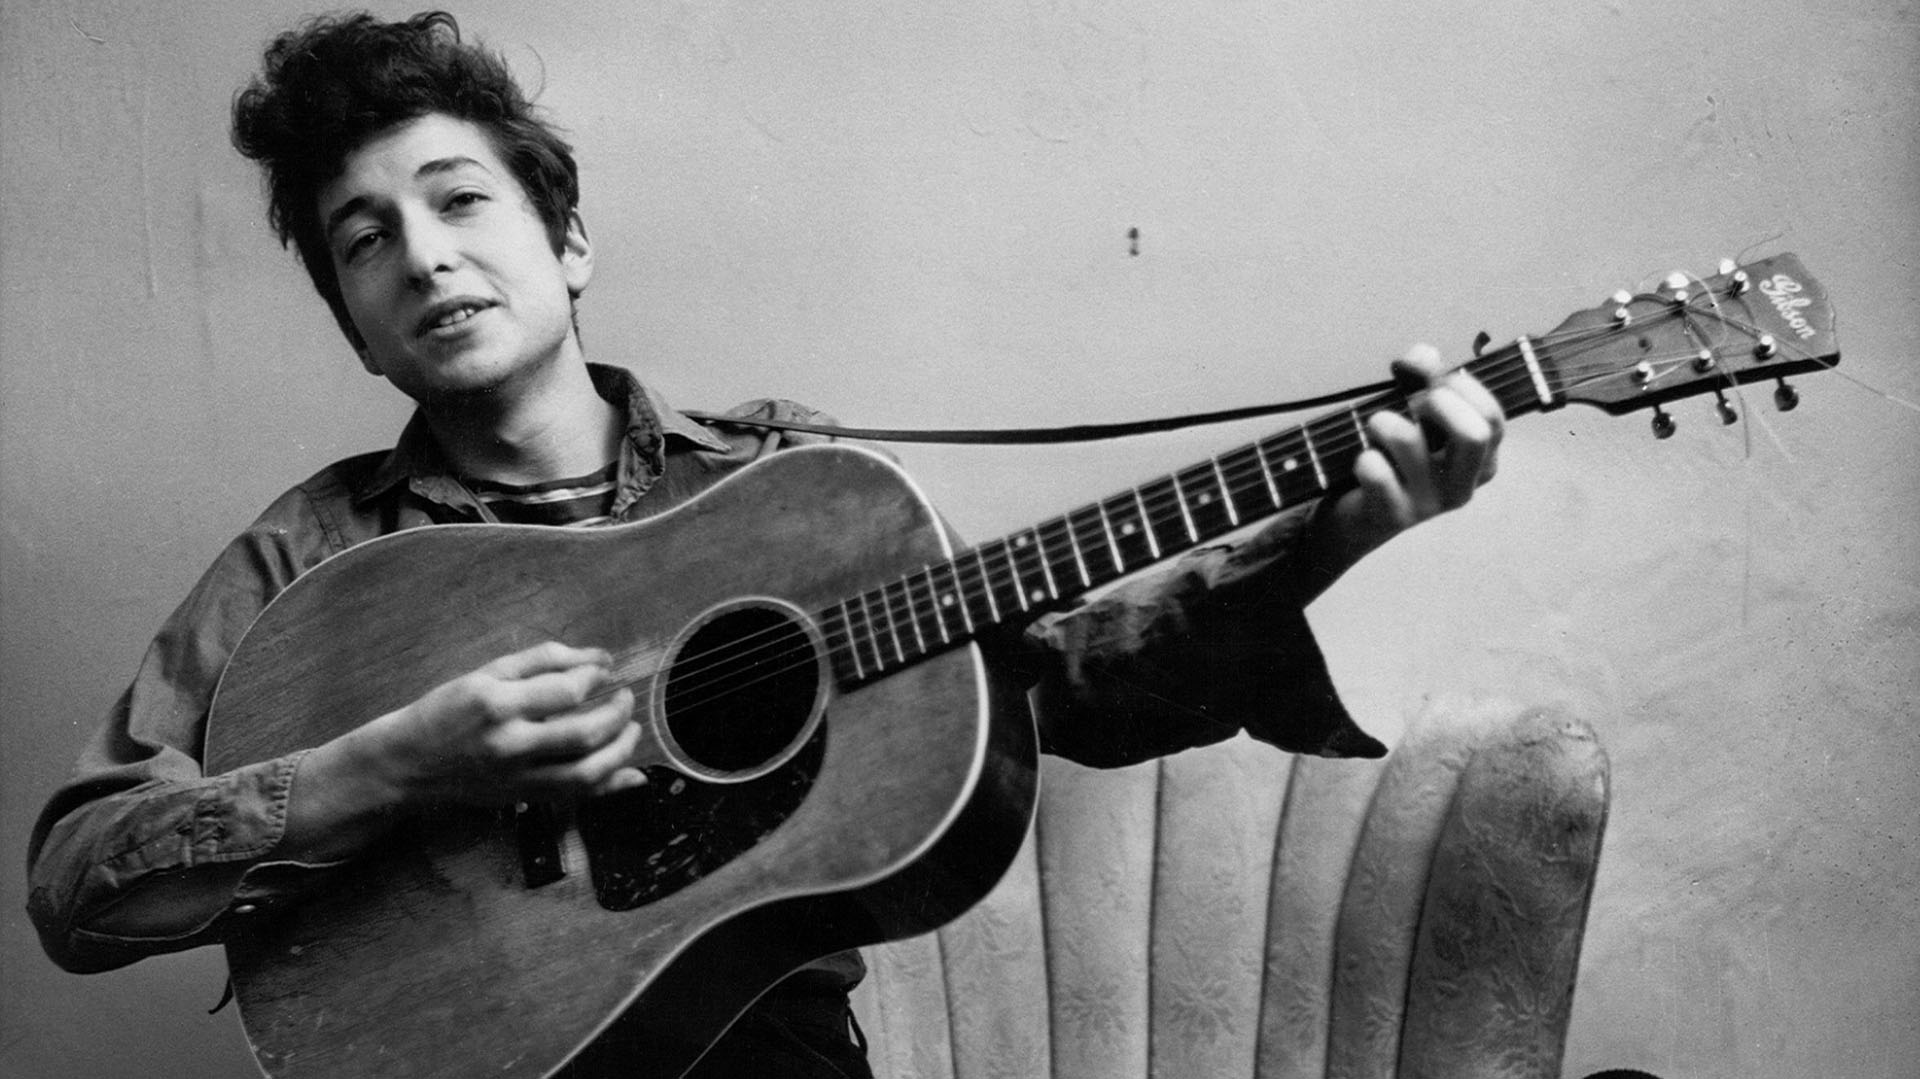 Bob Dylan retratado a principios de la década de los años 60, cuando asombró al mundo con sus canciones y actitud